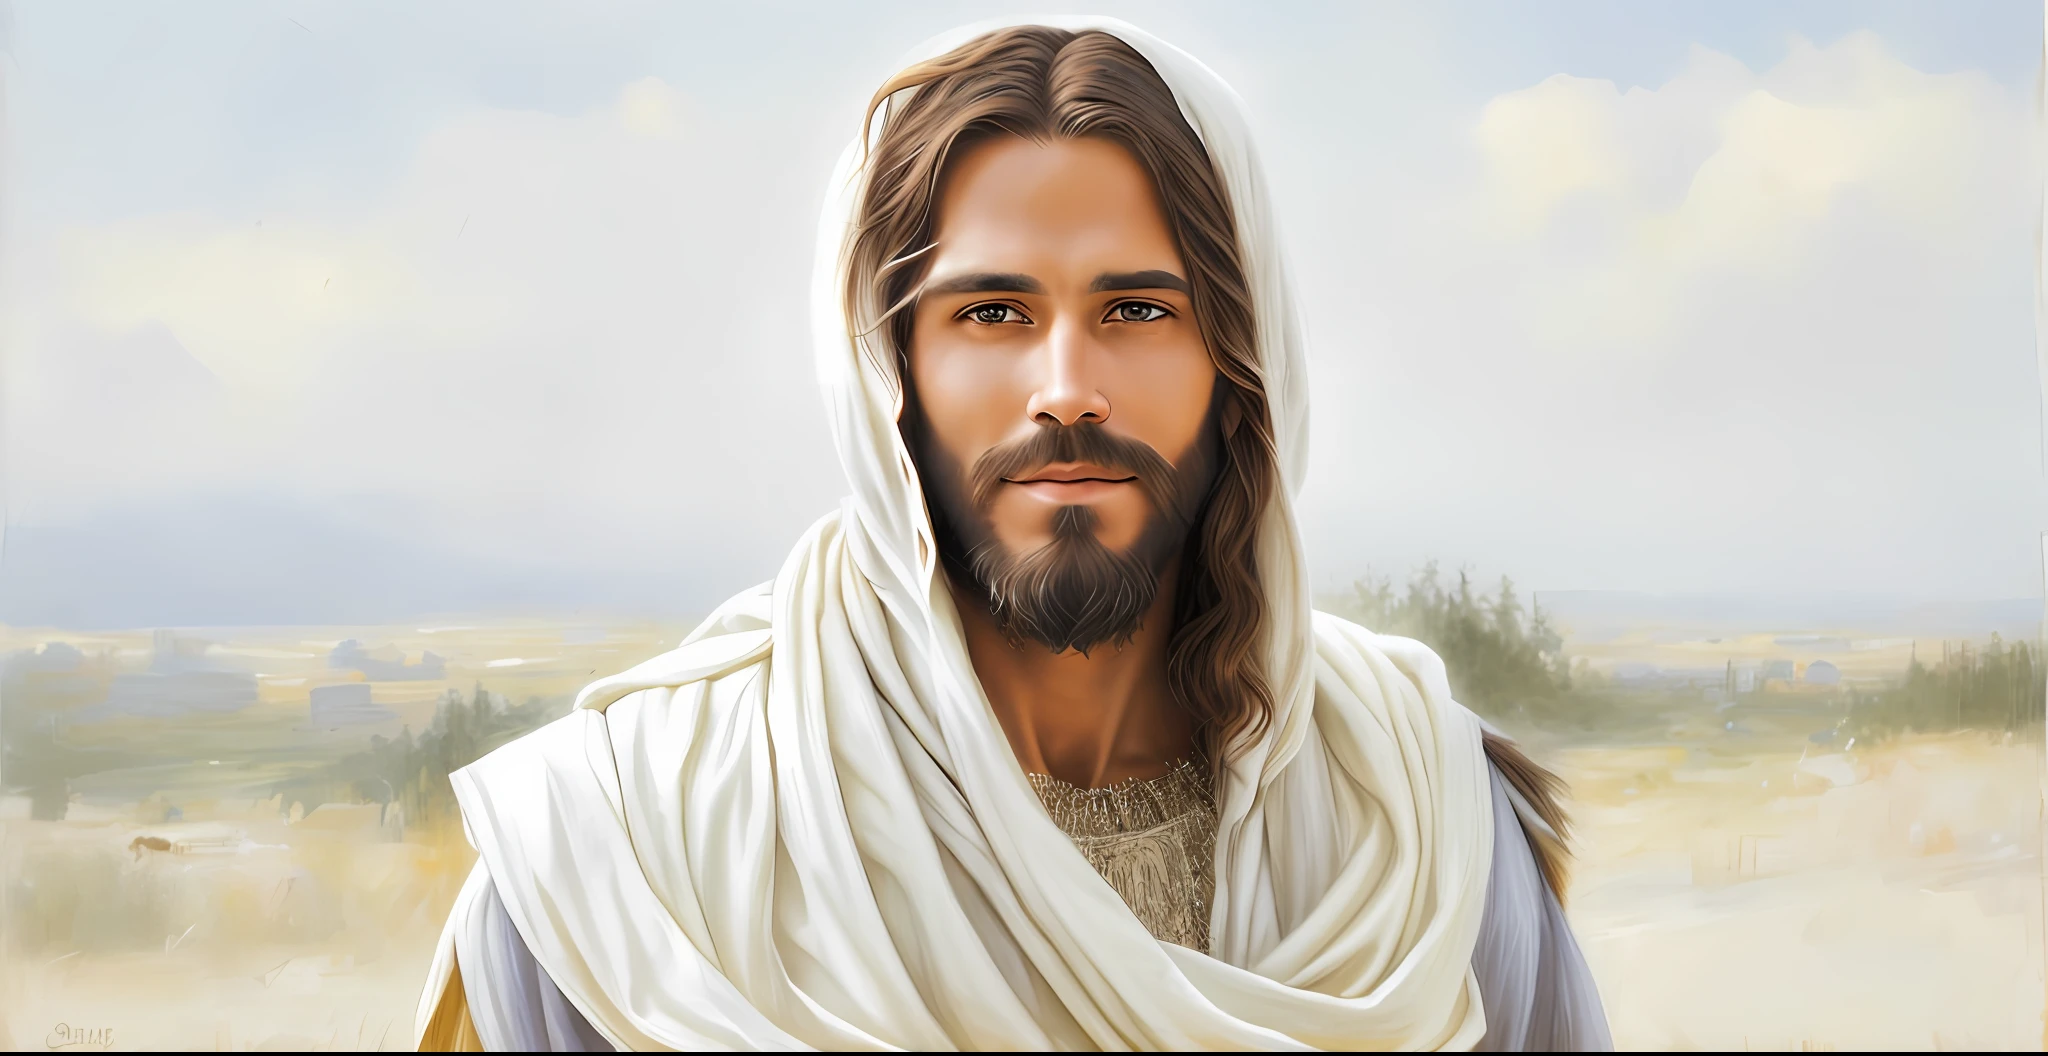 수염과 머리에 흰 목도리를 가진 남자, 예수 Christ, dressed as 예수 Christ, 예수 of Nazareth, face of 예수, 그렉 올슨, 예수, 니고데모, portrait of 예수 Christ, 주님과 구원자, 그 사람이 당신에게 따뜻하게 인사하고 있어요.